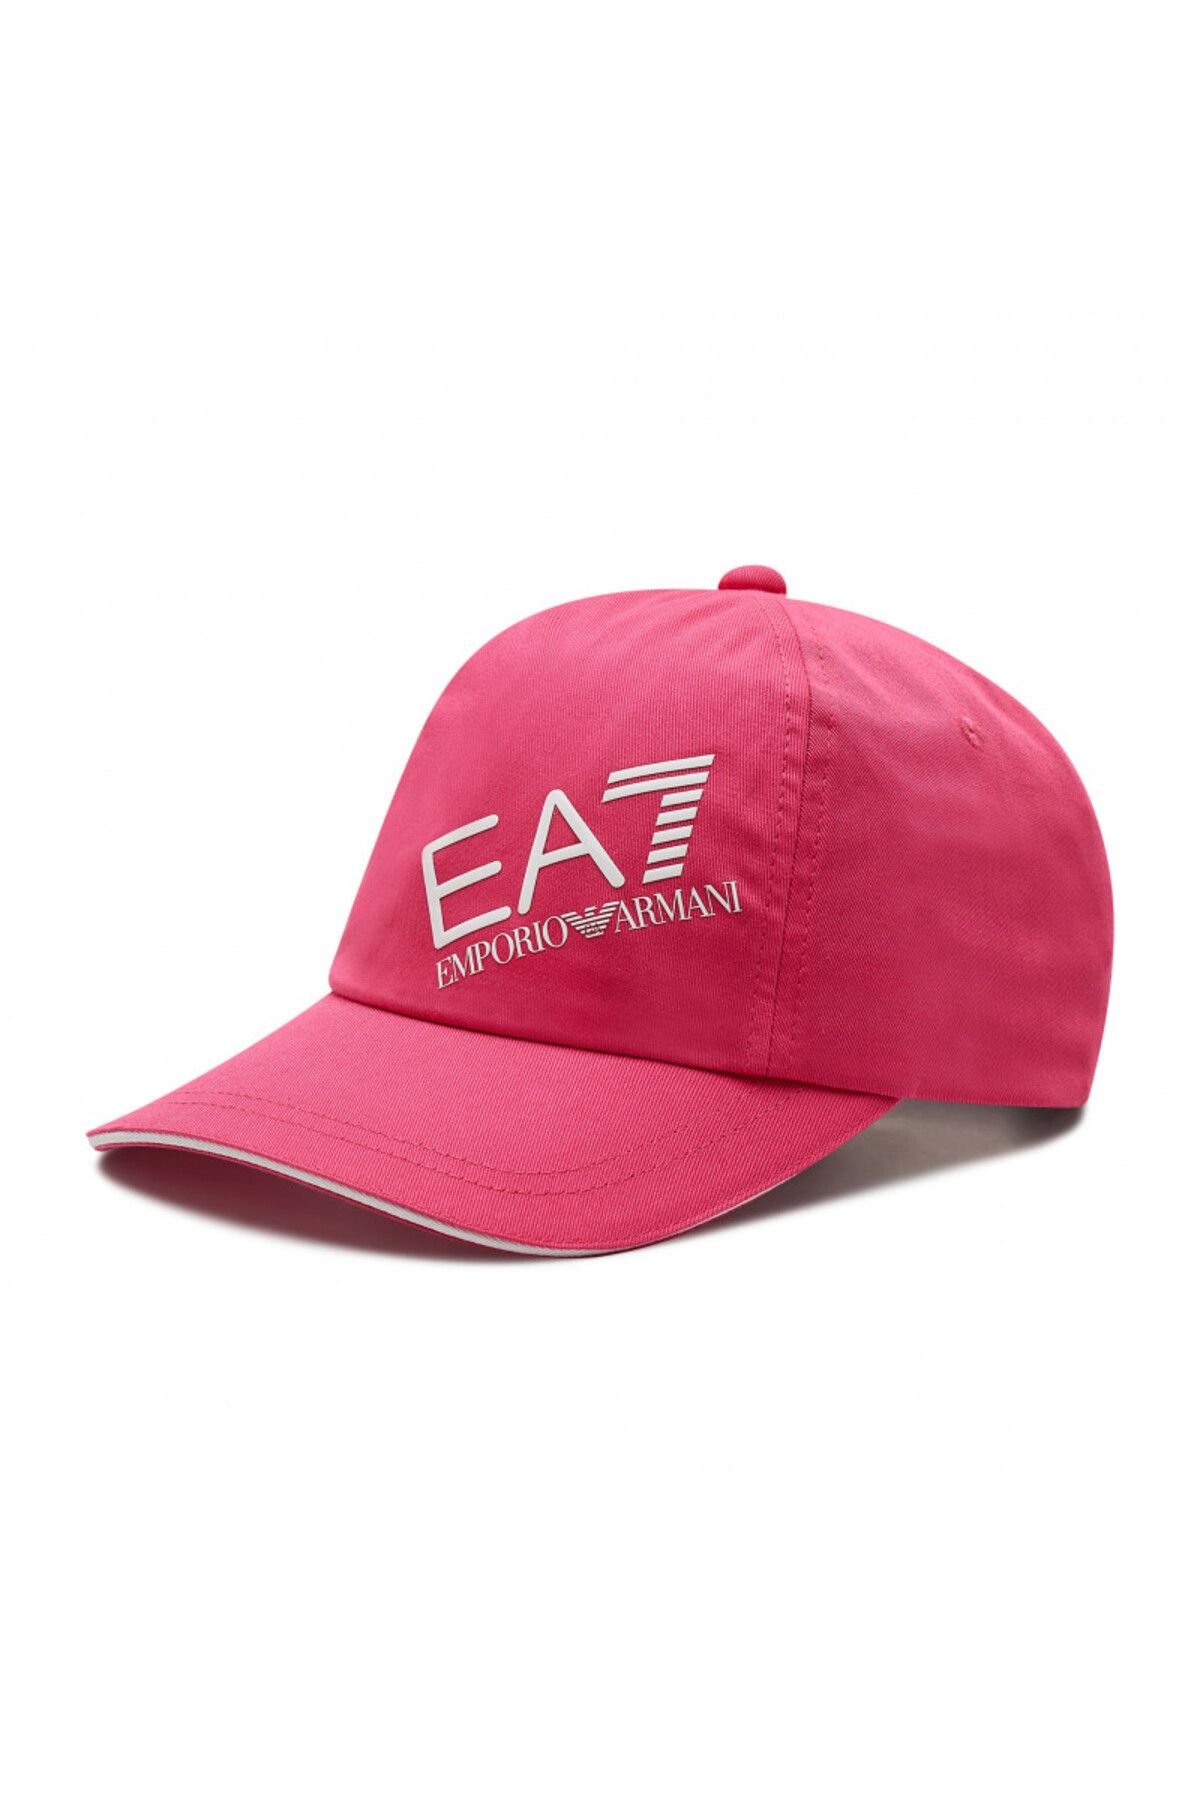 Emporio Armani Kadın Şapka 284952-2r101-05872